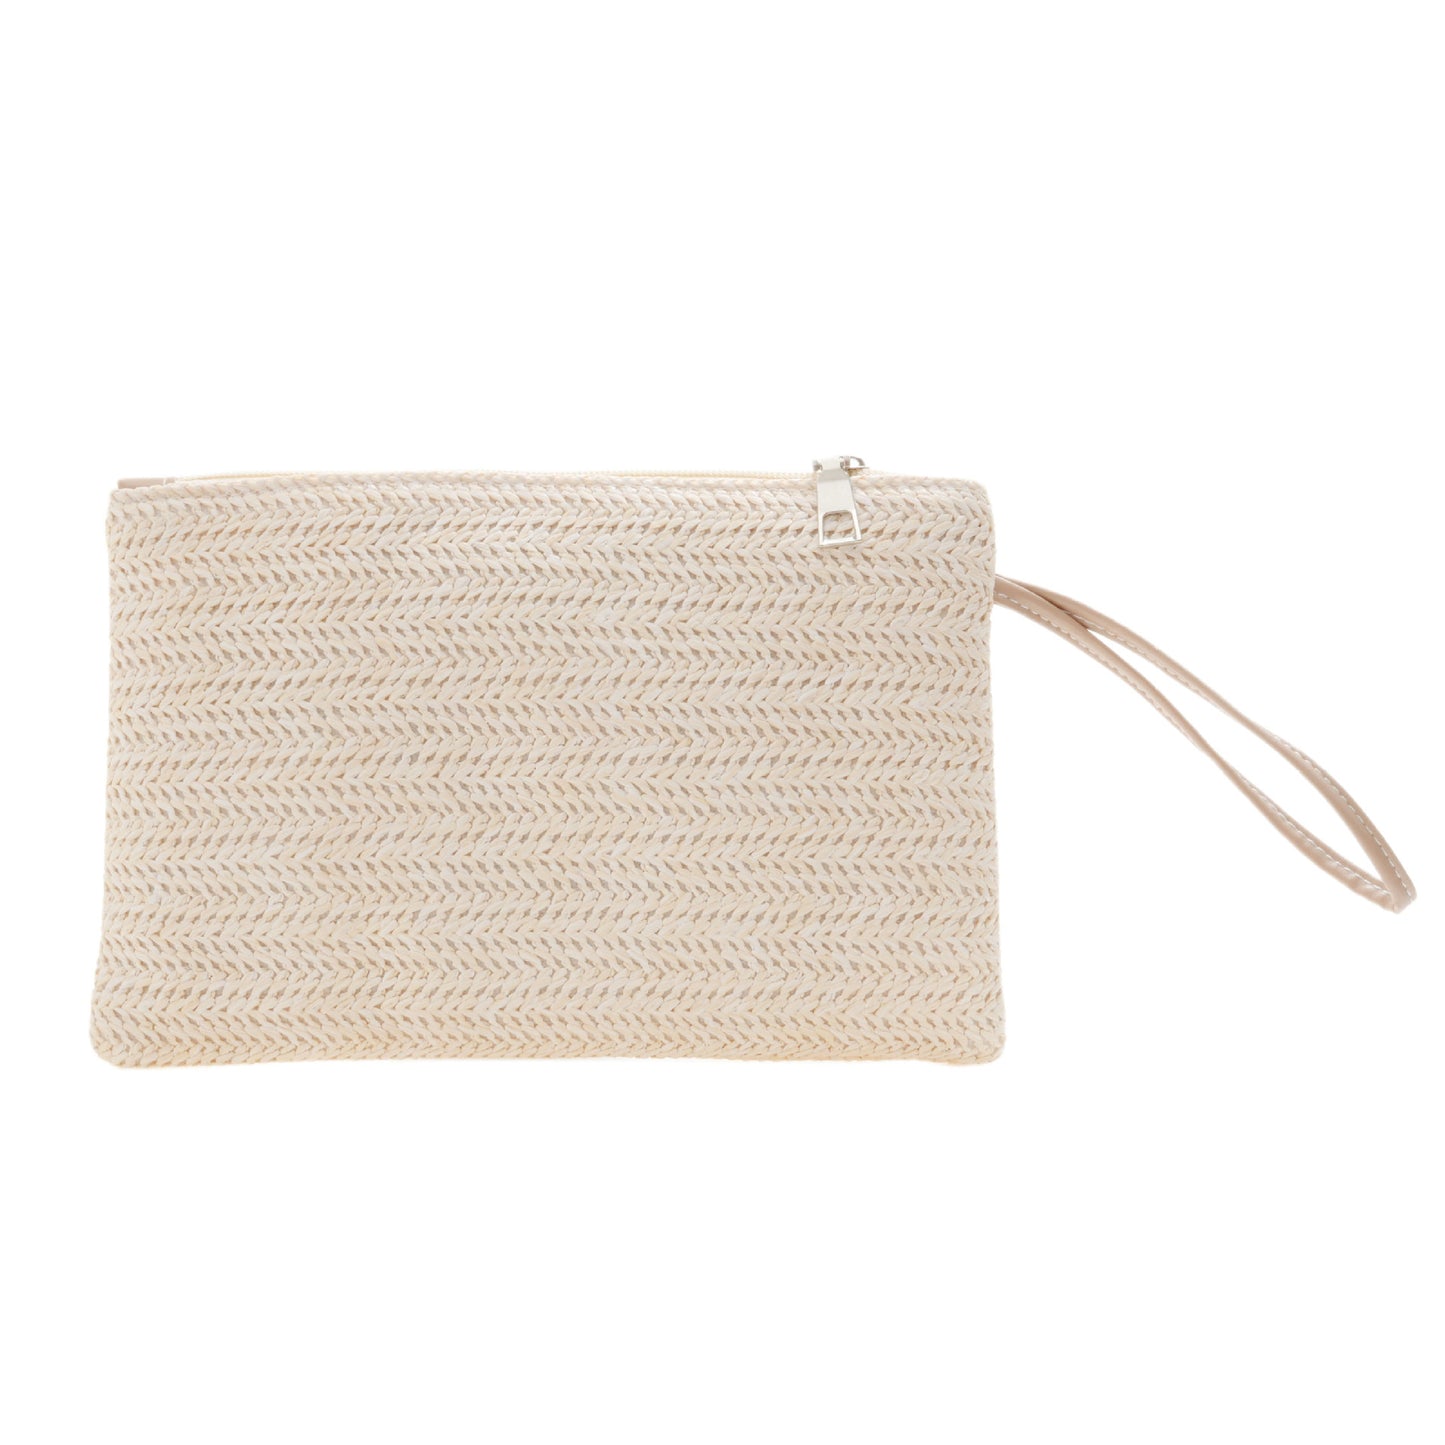 Women's Wheat Straw Clutch Bag